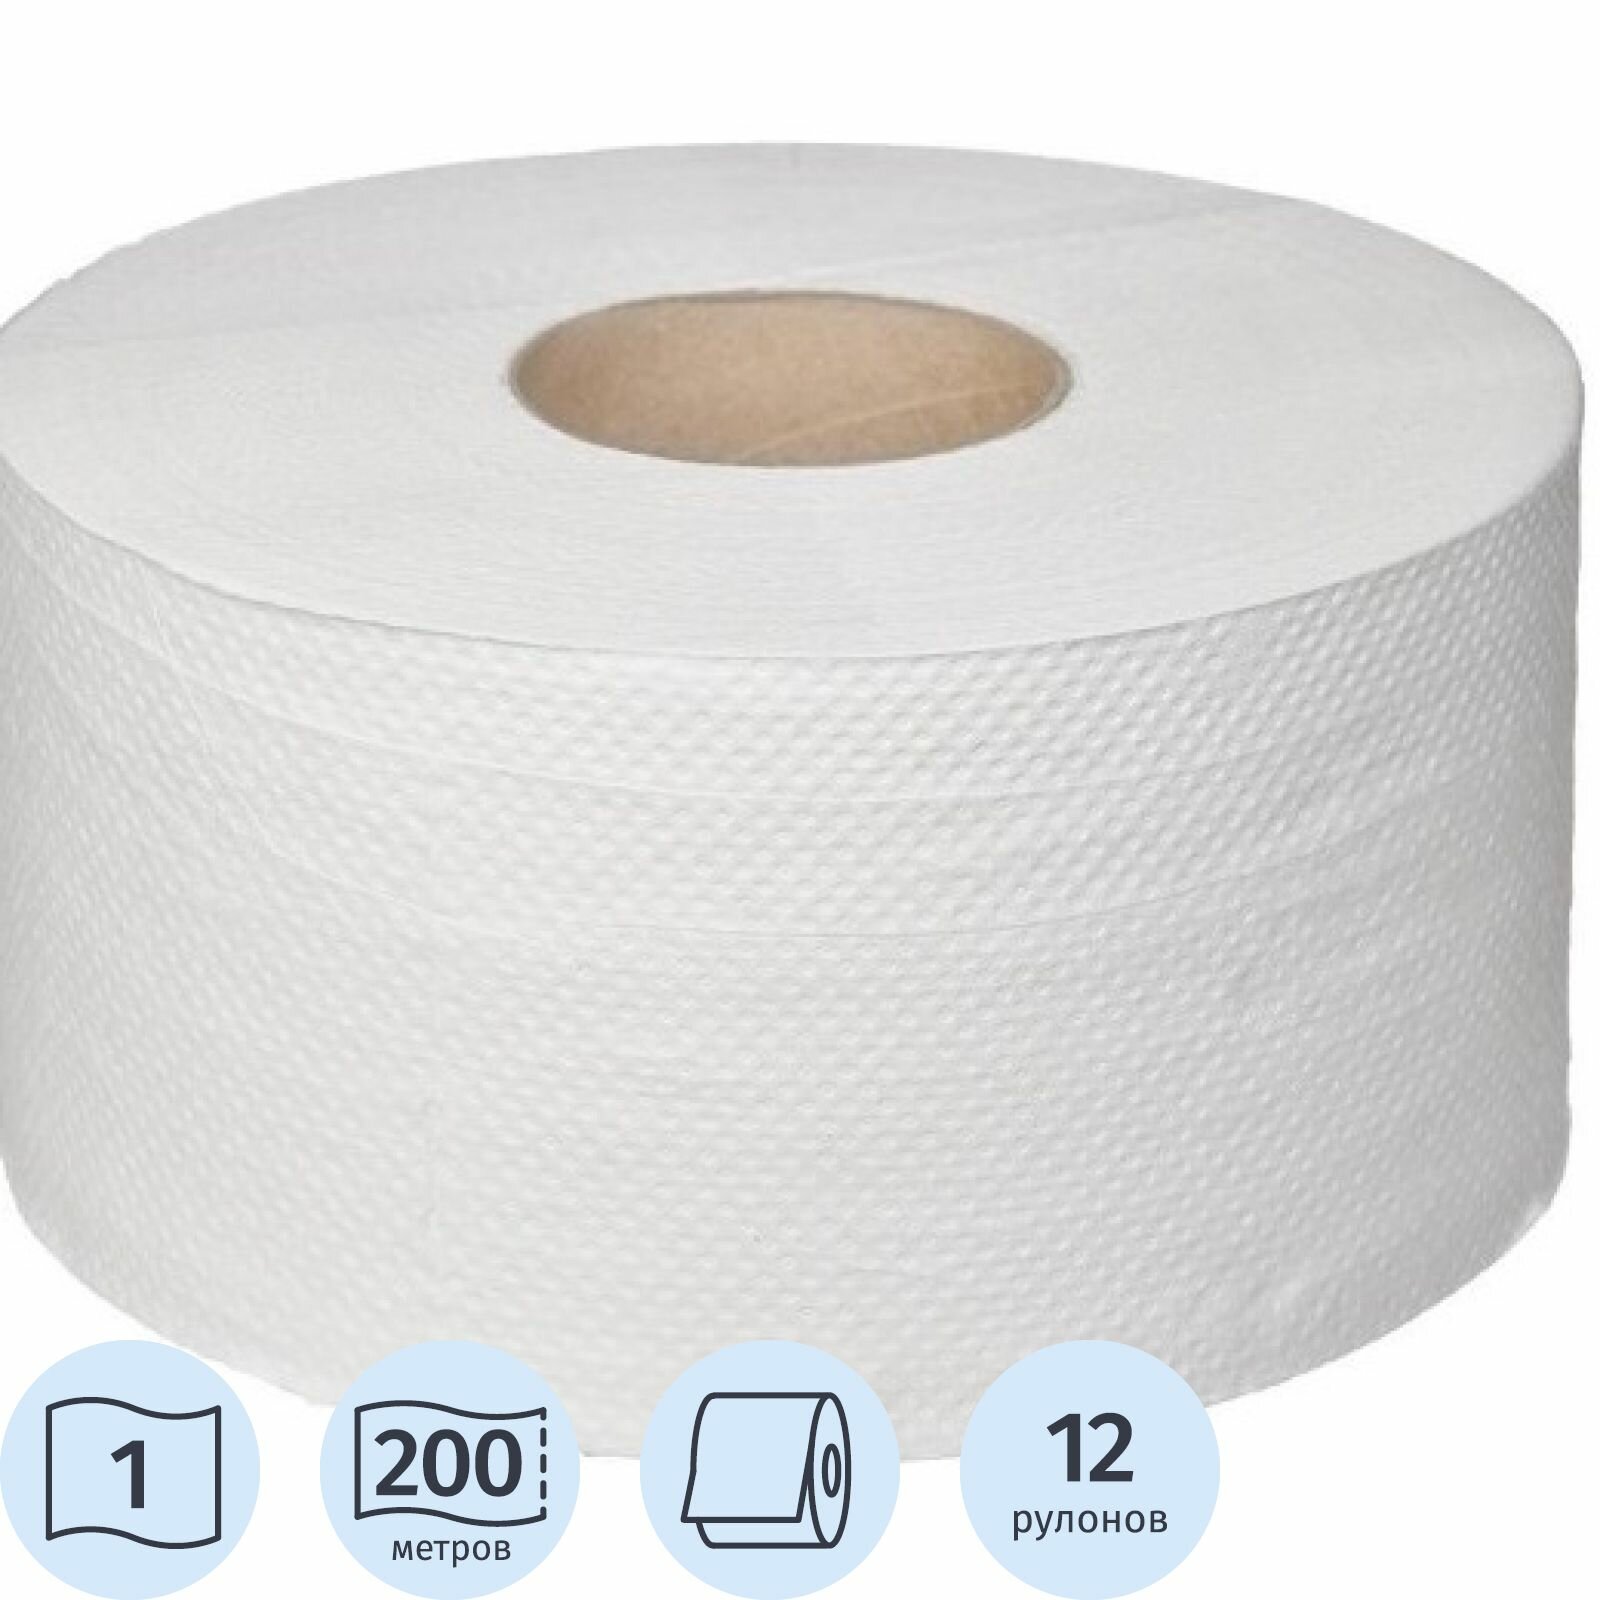 Туалетная бумага Luscan для диспенсера, Professional, 1 слой, белая, 200 м, 12 рулонов